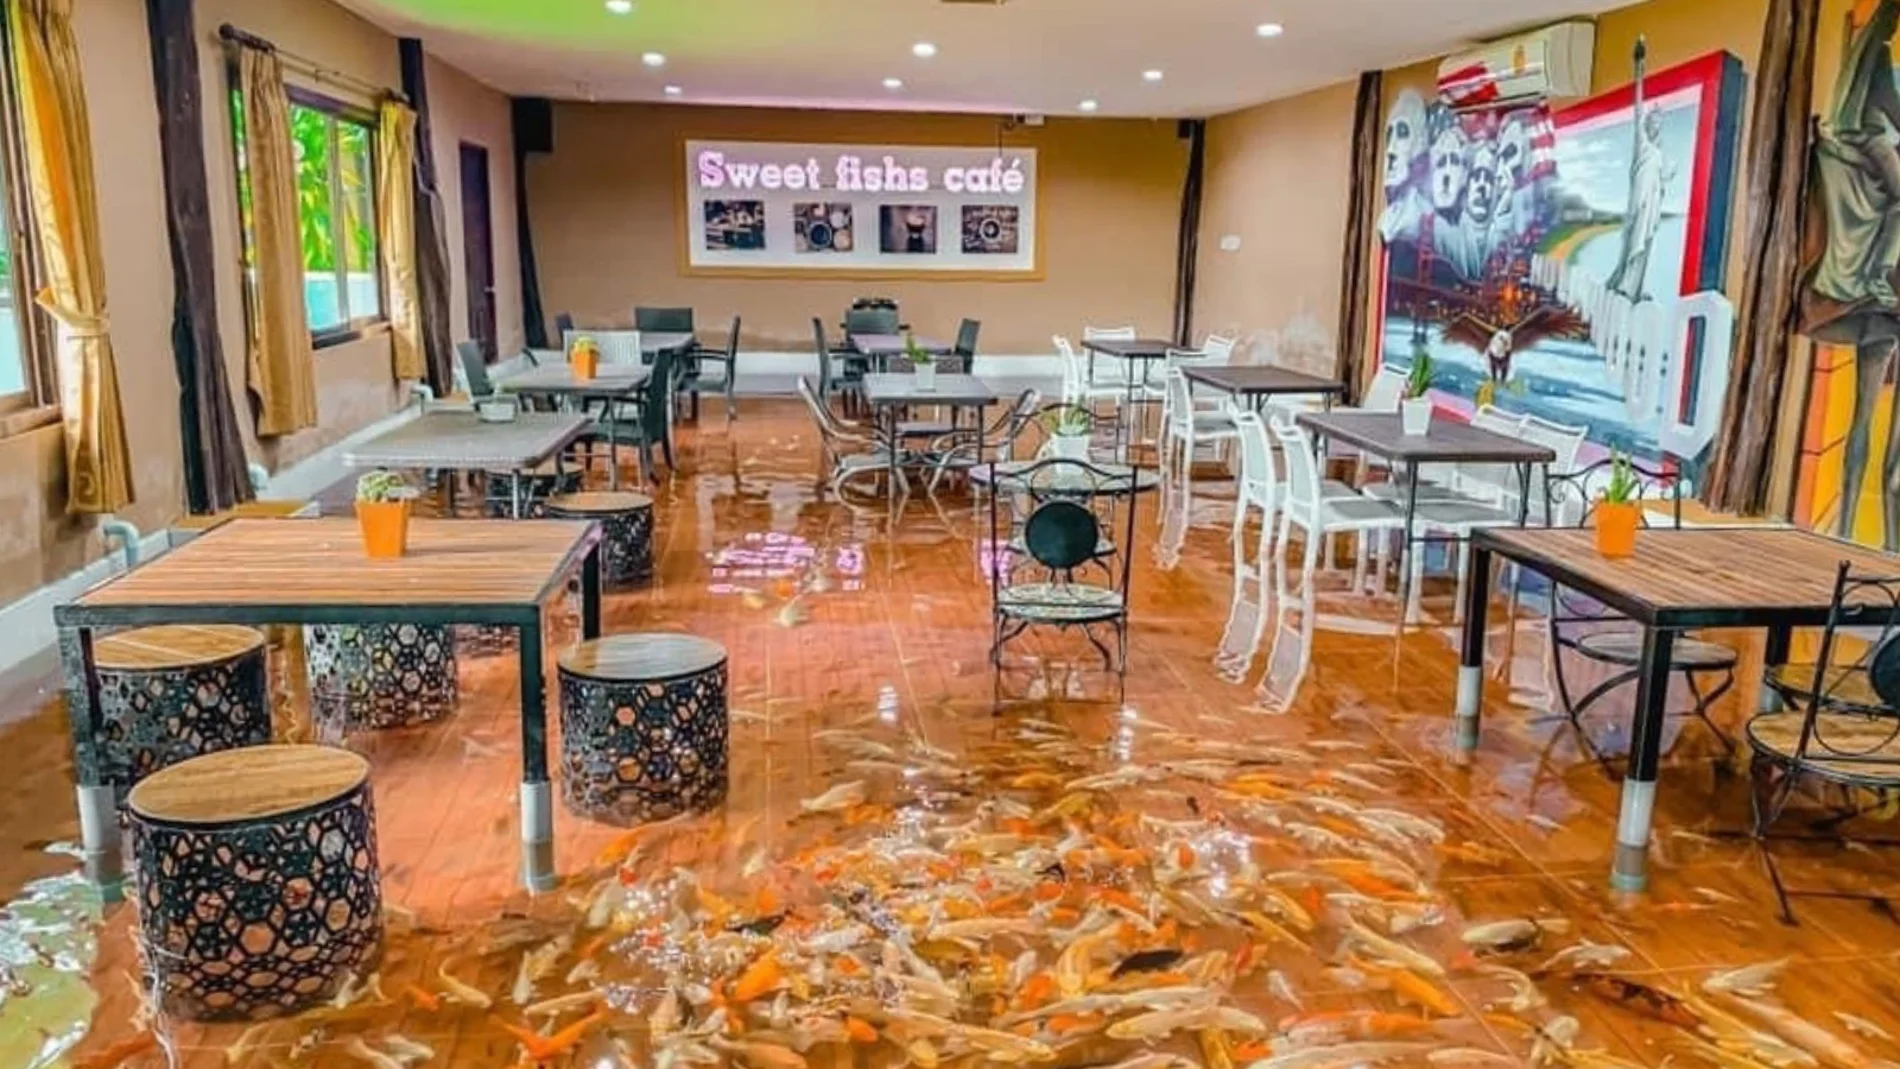 Restaurante donde los peces nadan entre los clientes